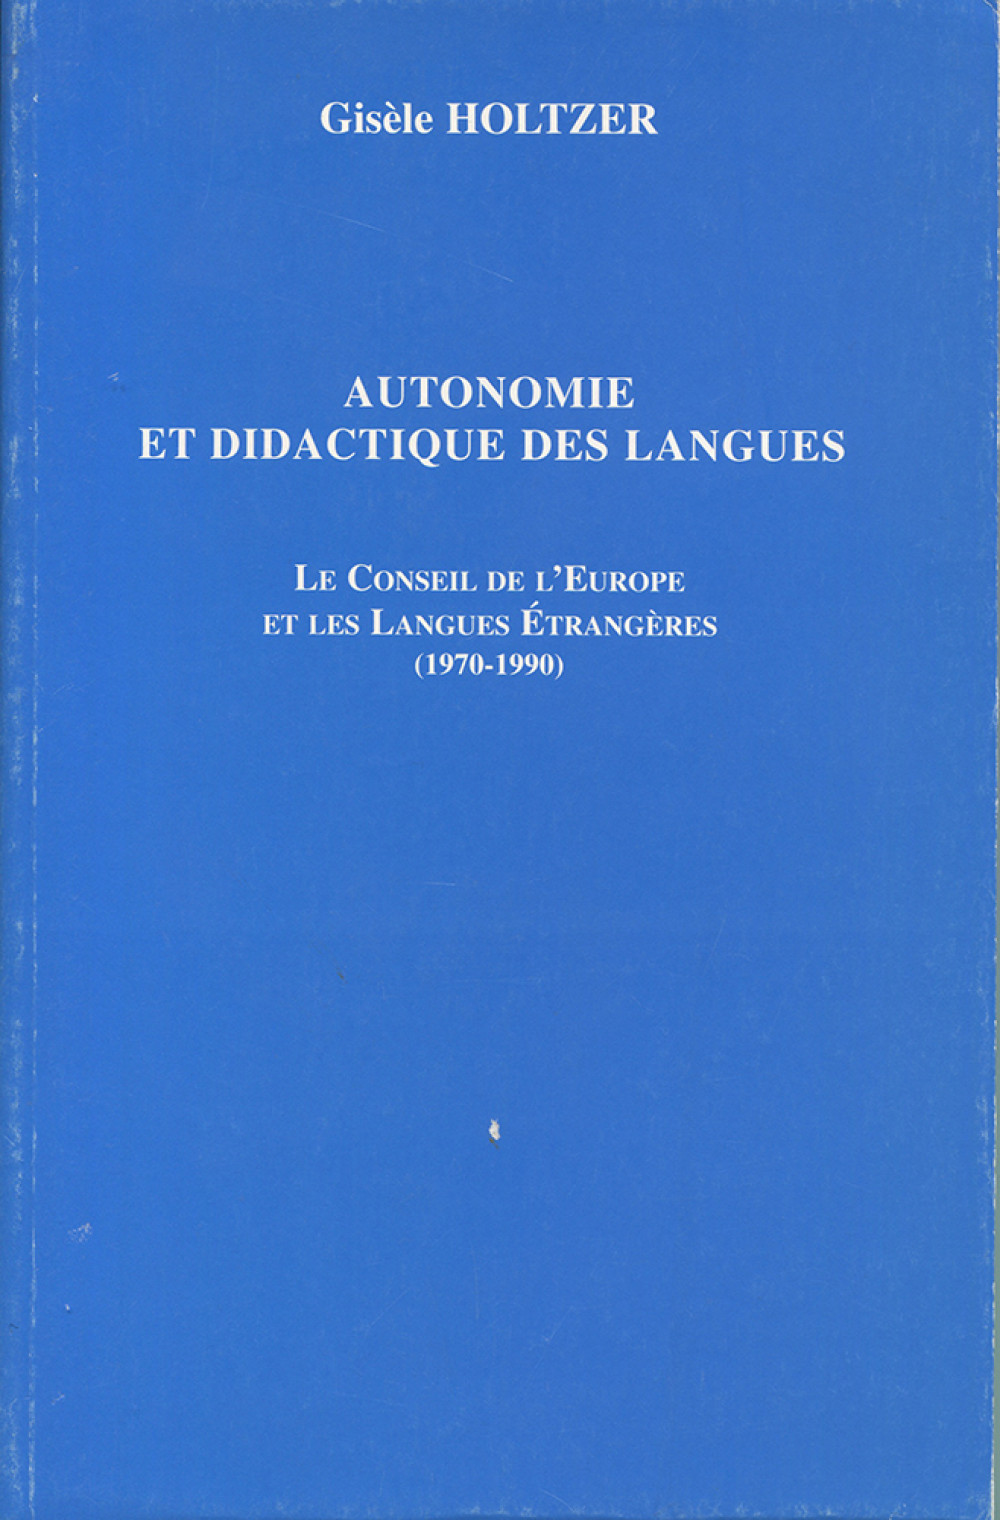 Autonomie et didactique des langues